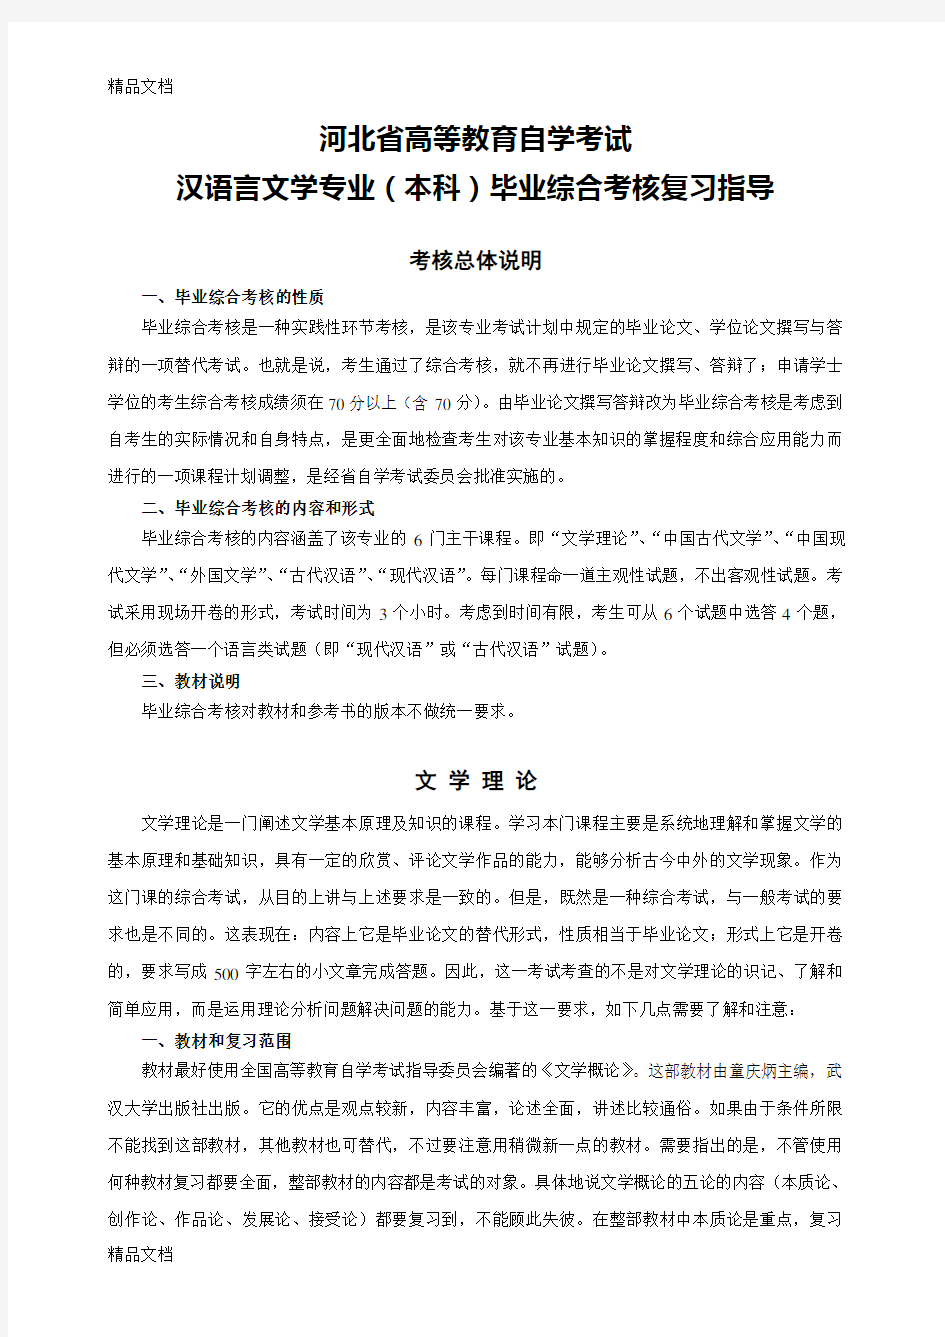 汉语言文学专业毕业综合考核辅导材料复习进程